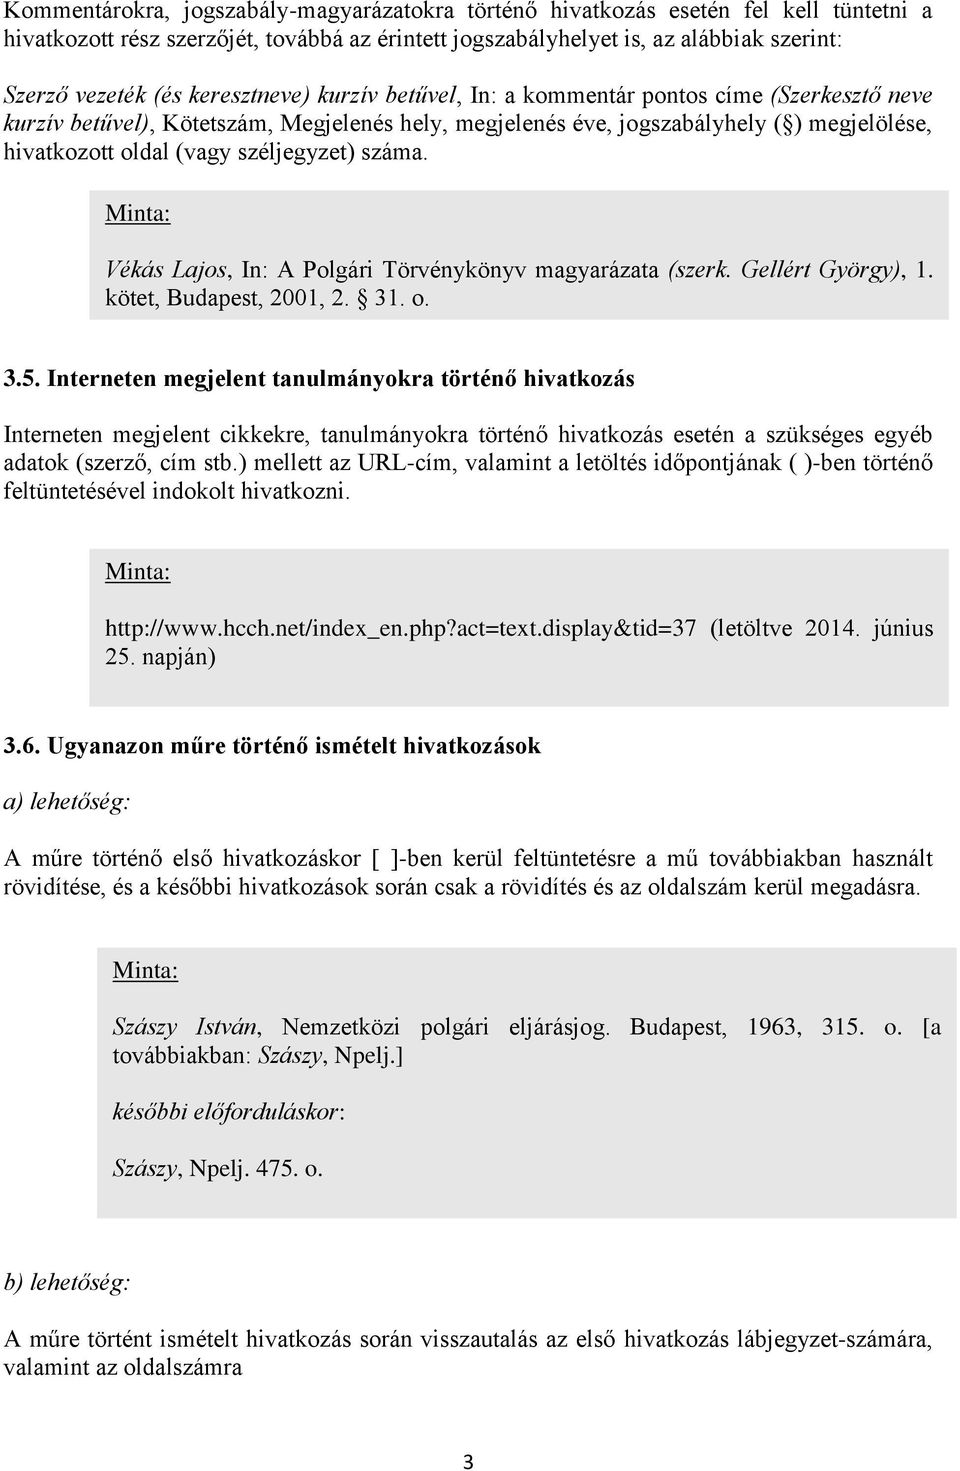 széljegyzet) száma. Vékás Lajos, In: A Polgári Törvénykönyv magyarázata (szerk. Gellért György), 1. kötet, Budapest, 2001, 2. 31. o. 3.5.